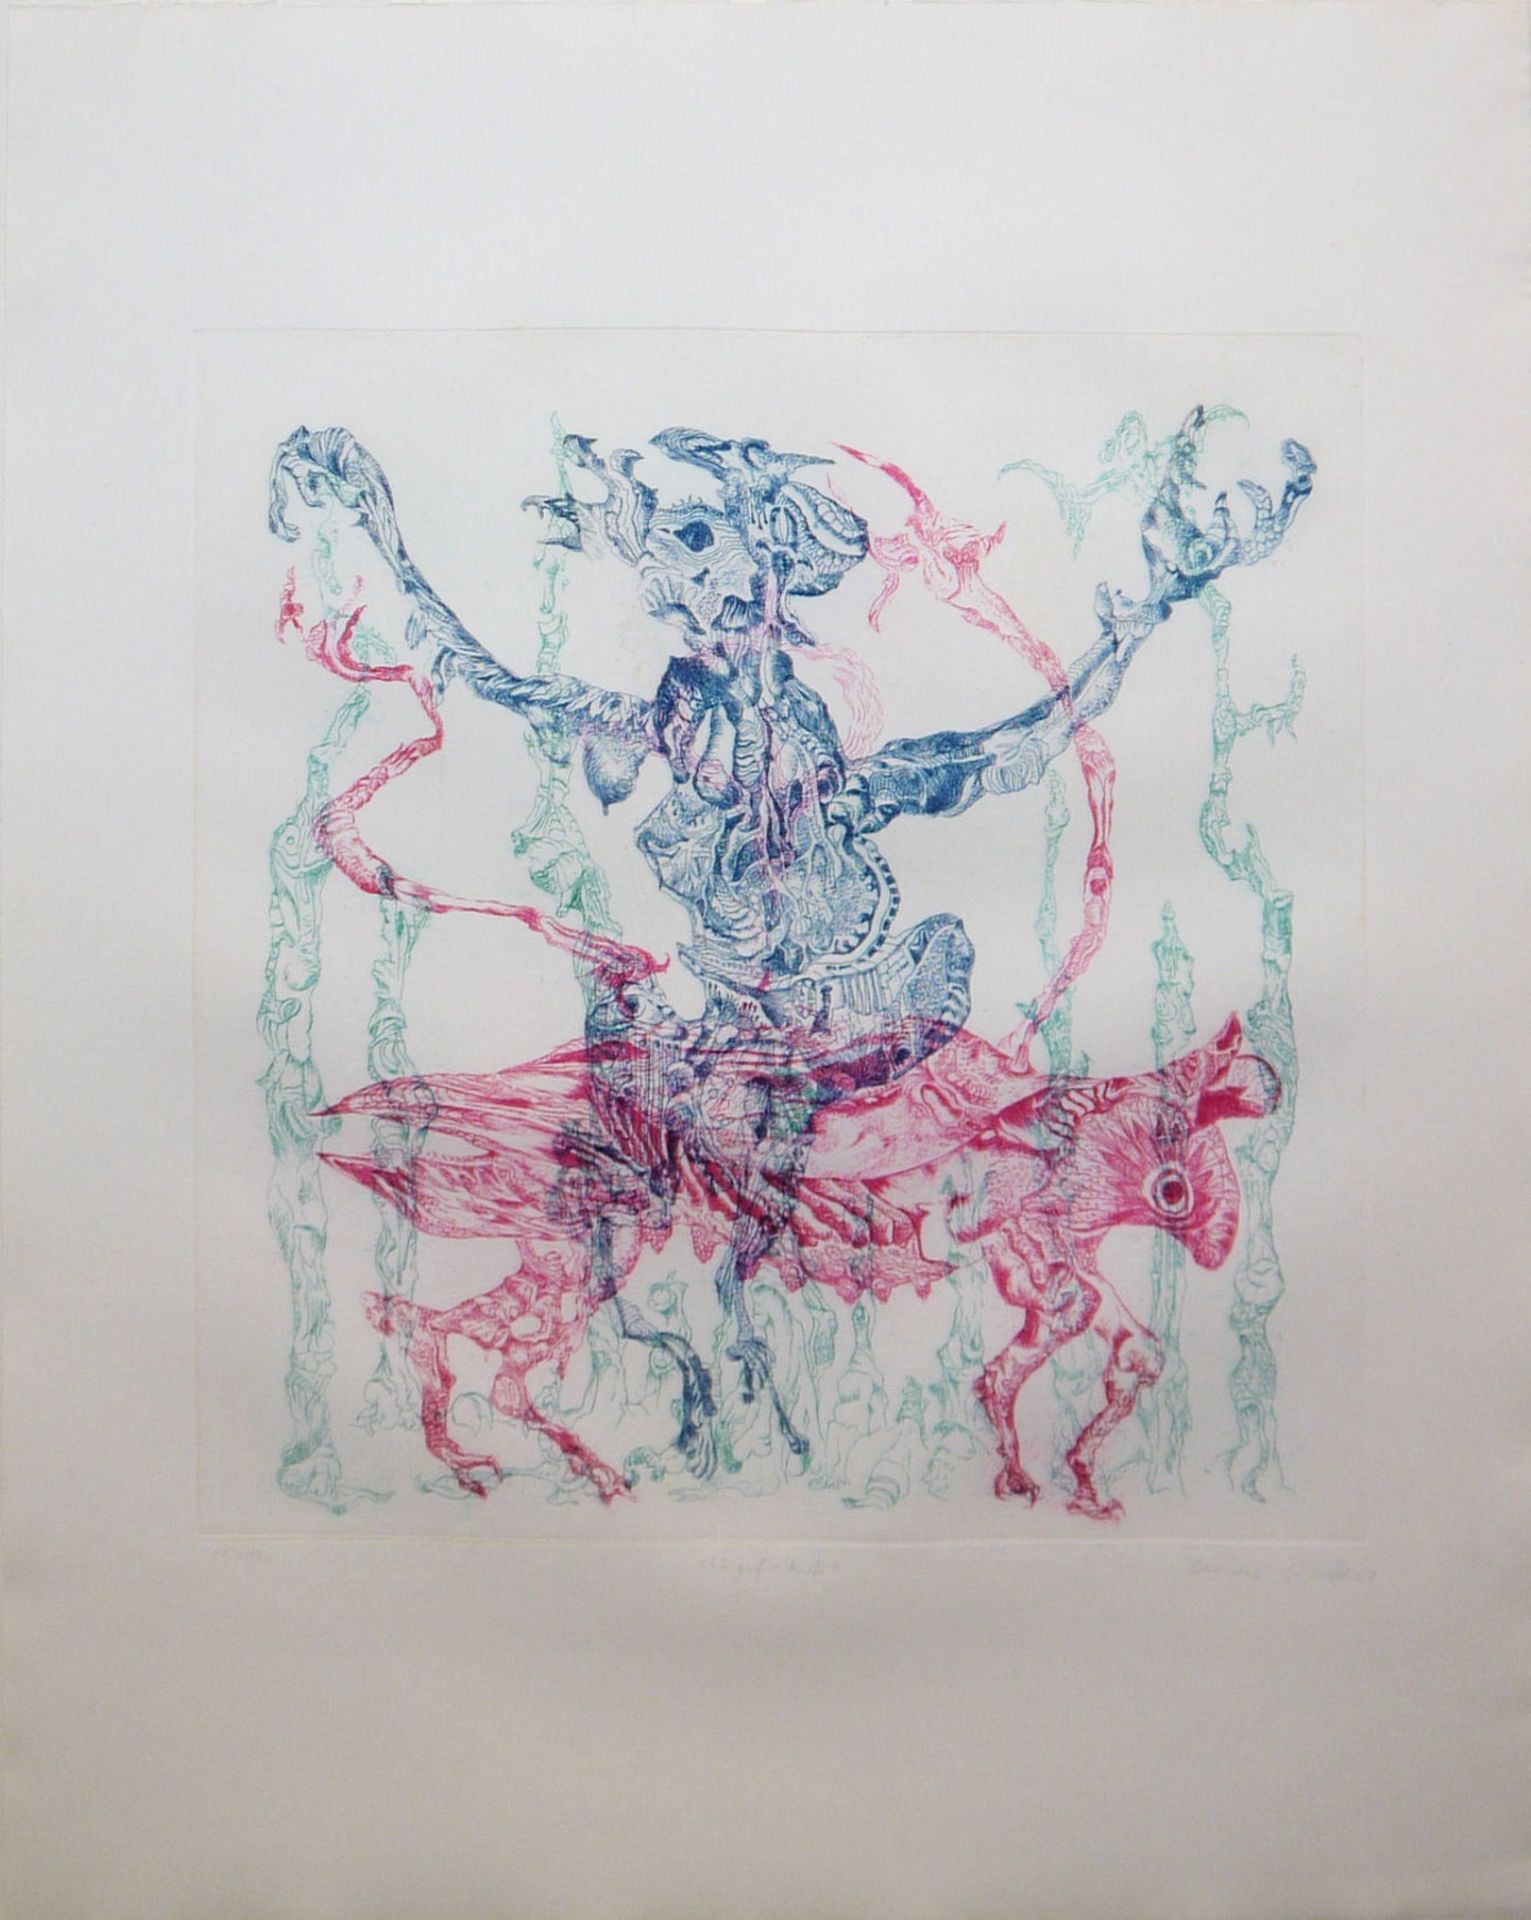 Bernard Schultze, "Migof-Ritt", signed colour etching from 1969, framed